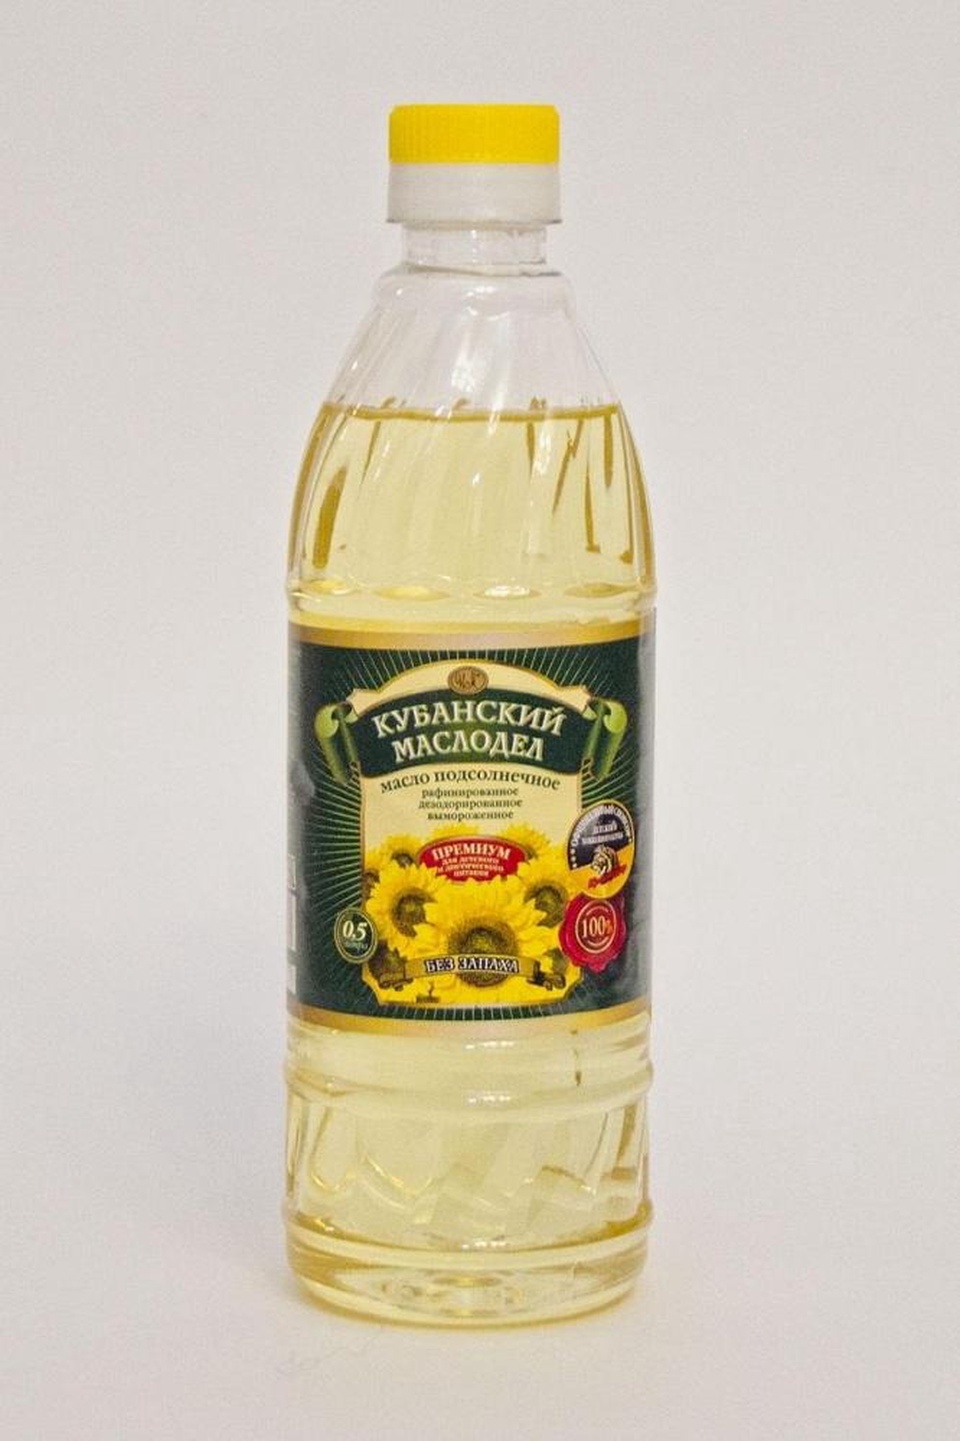 Кубанский маслодел 1л подсолнечное масло нерафин/ароматное - 135 ₽, заказать онлайн.